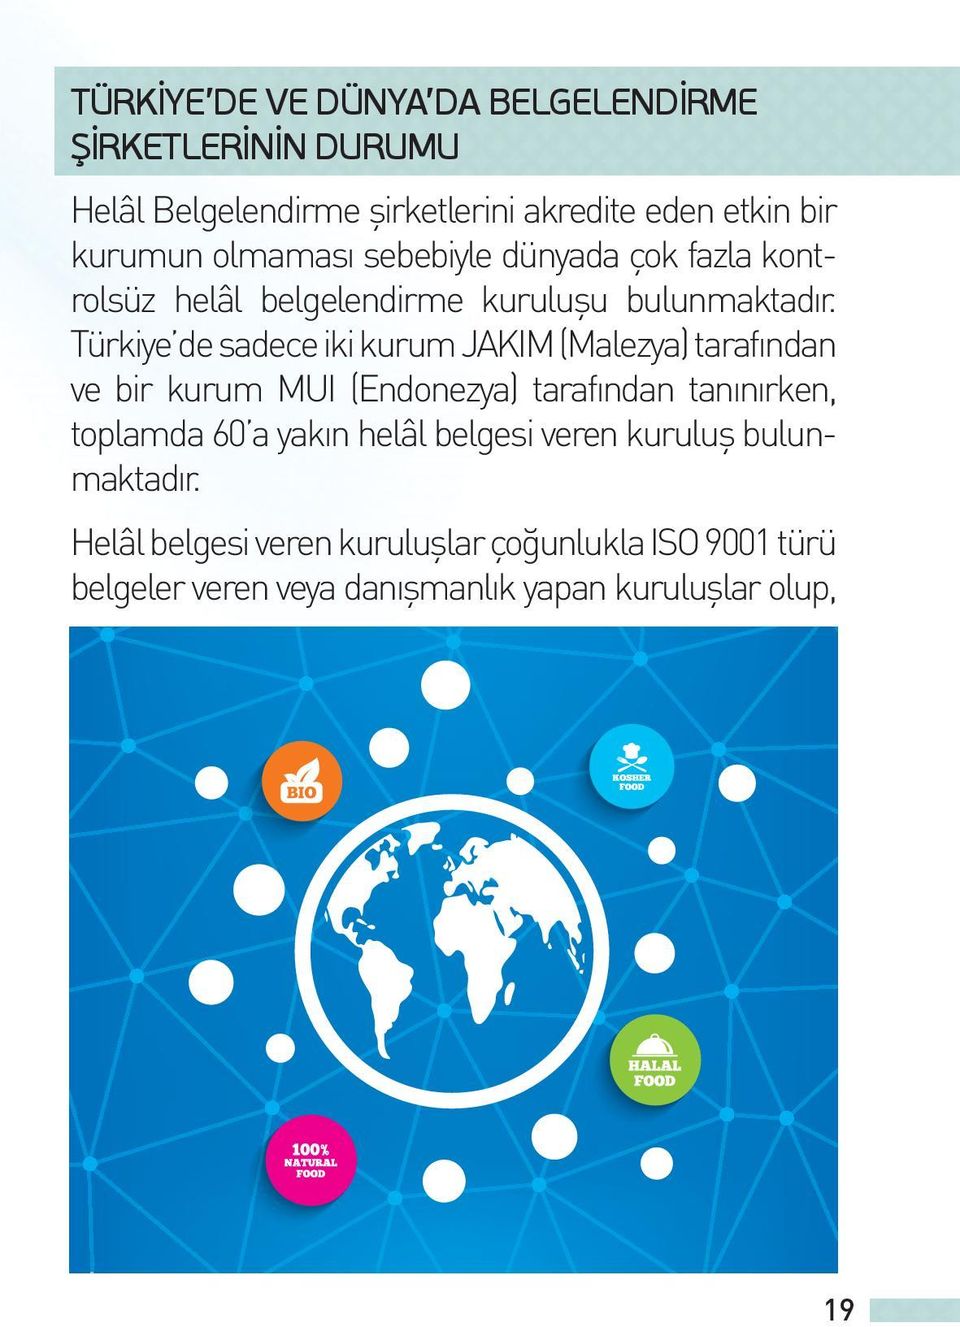 Türkiye de sadece iki kurum JAKIM (Malezya) tarafından ve bir kurum MUI (Endonezya) tarafından tanınırken, toplamda 60 a